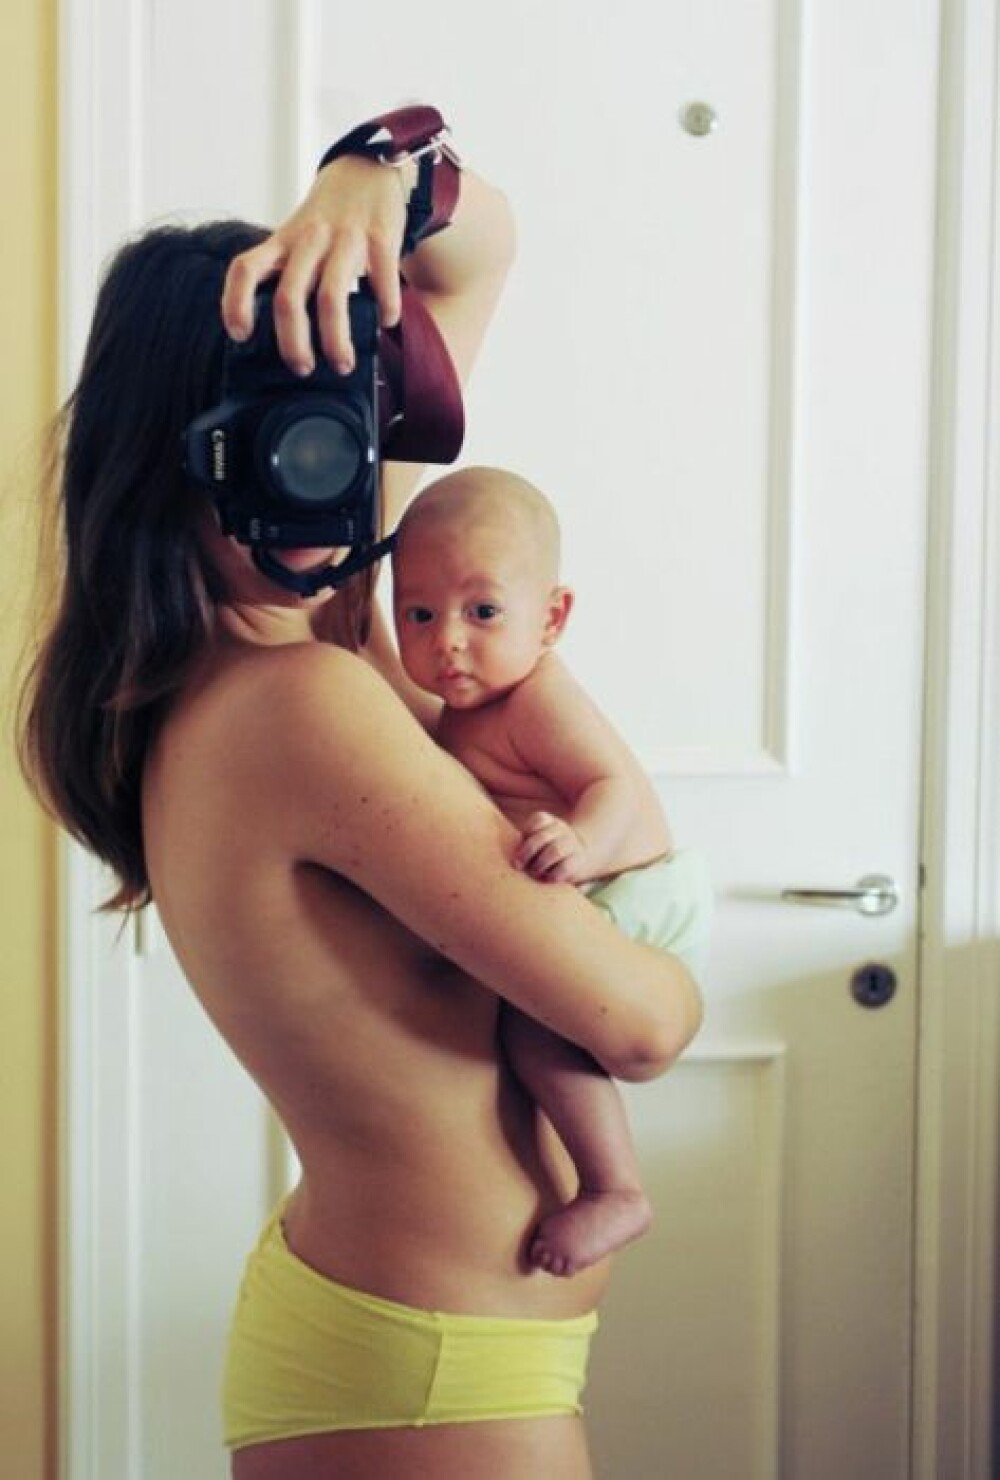 S-a fotografiat in fiecare luna de sarcina, in oglinda. E incredibil ce a iesit la final. FOTO - Imaginea 10